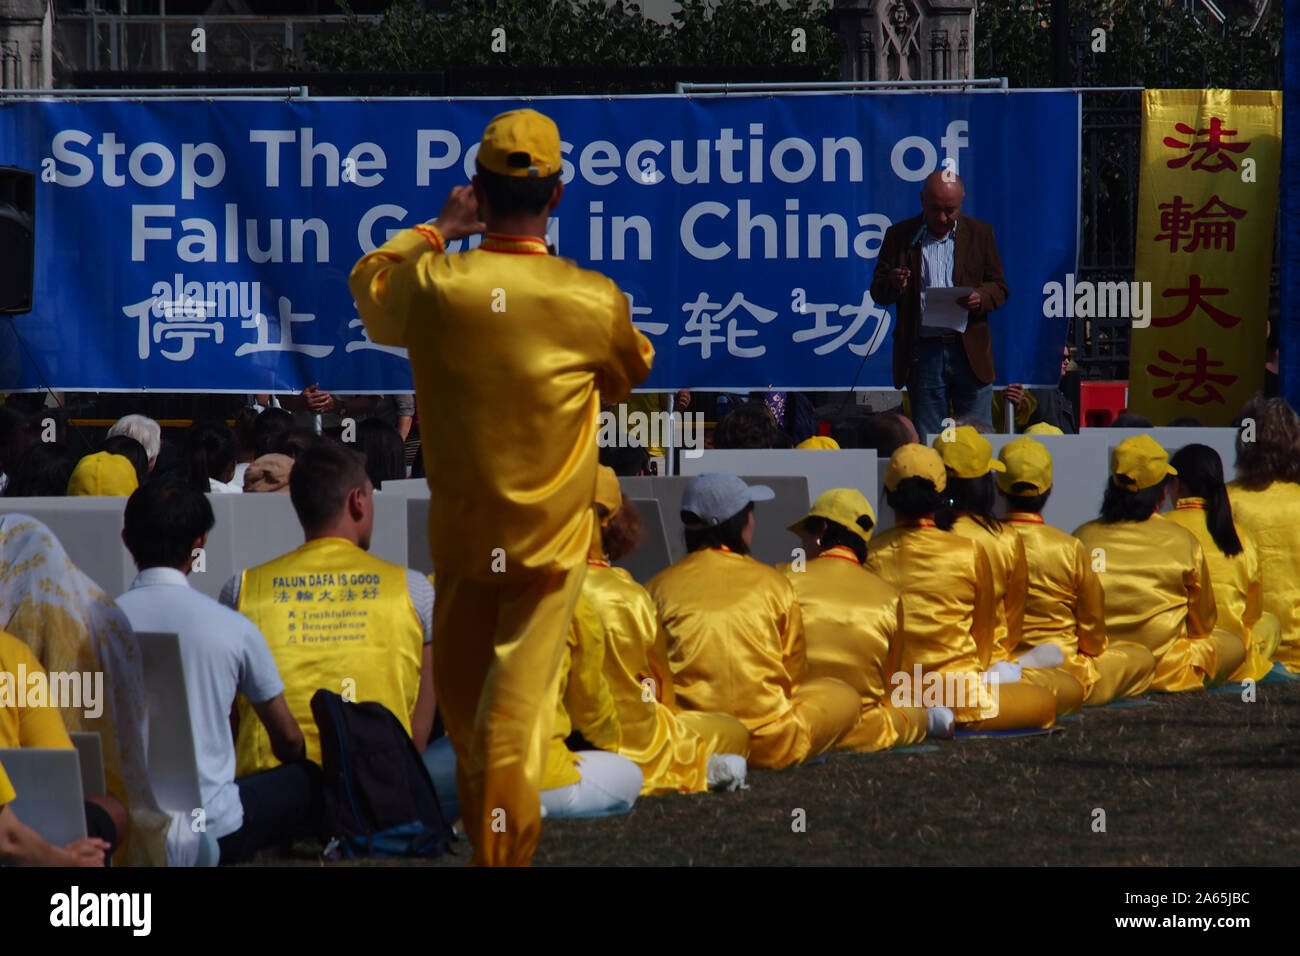 Un grupo numeroso de ciudadanos chinos celebrar una protesta pacífica por la persecución de la Falon Gong secc. La protesta es en Parliament Square, Londres Foto de stock